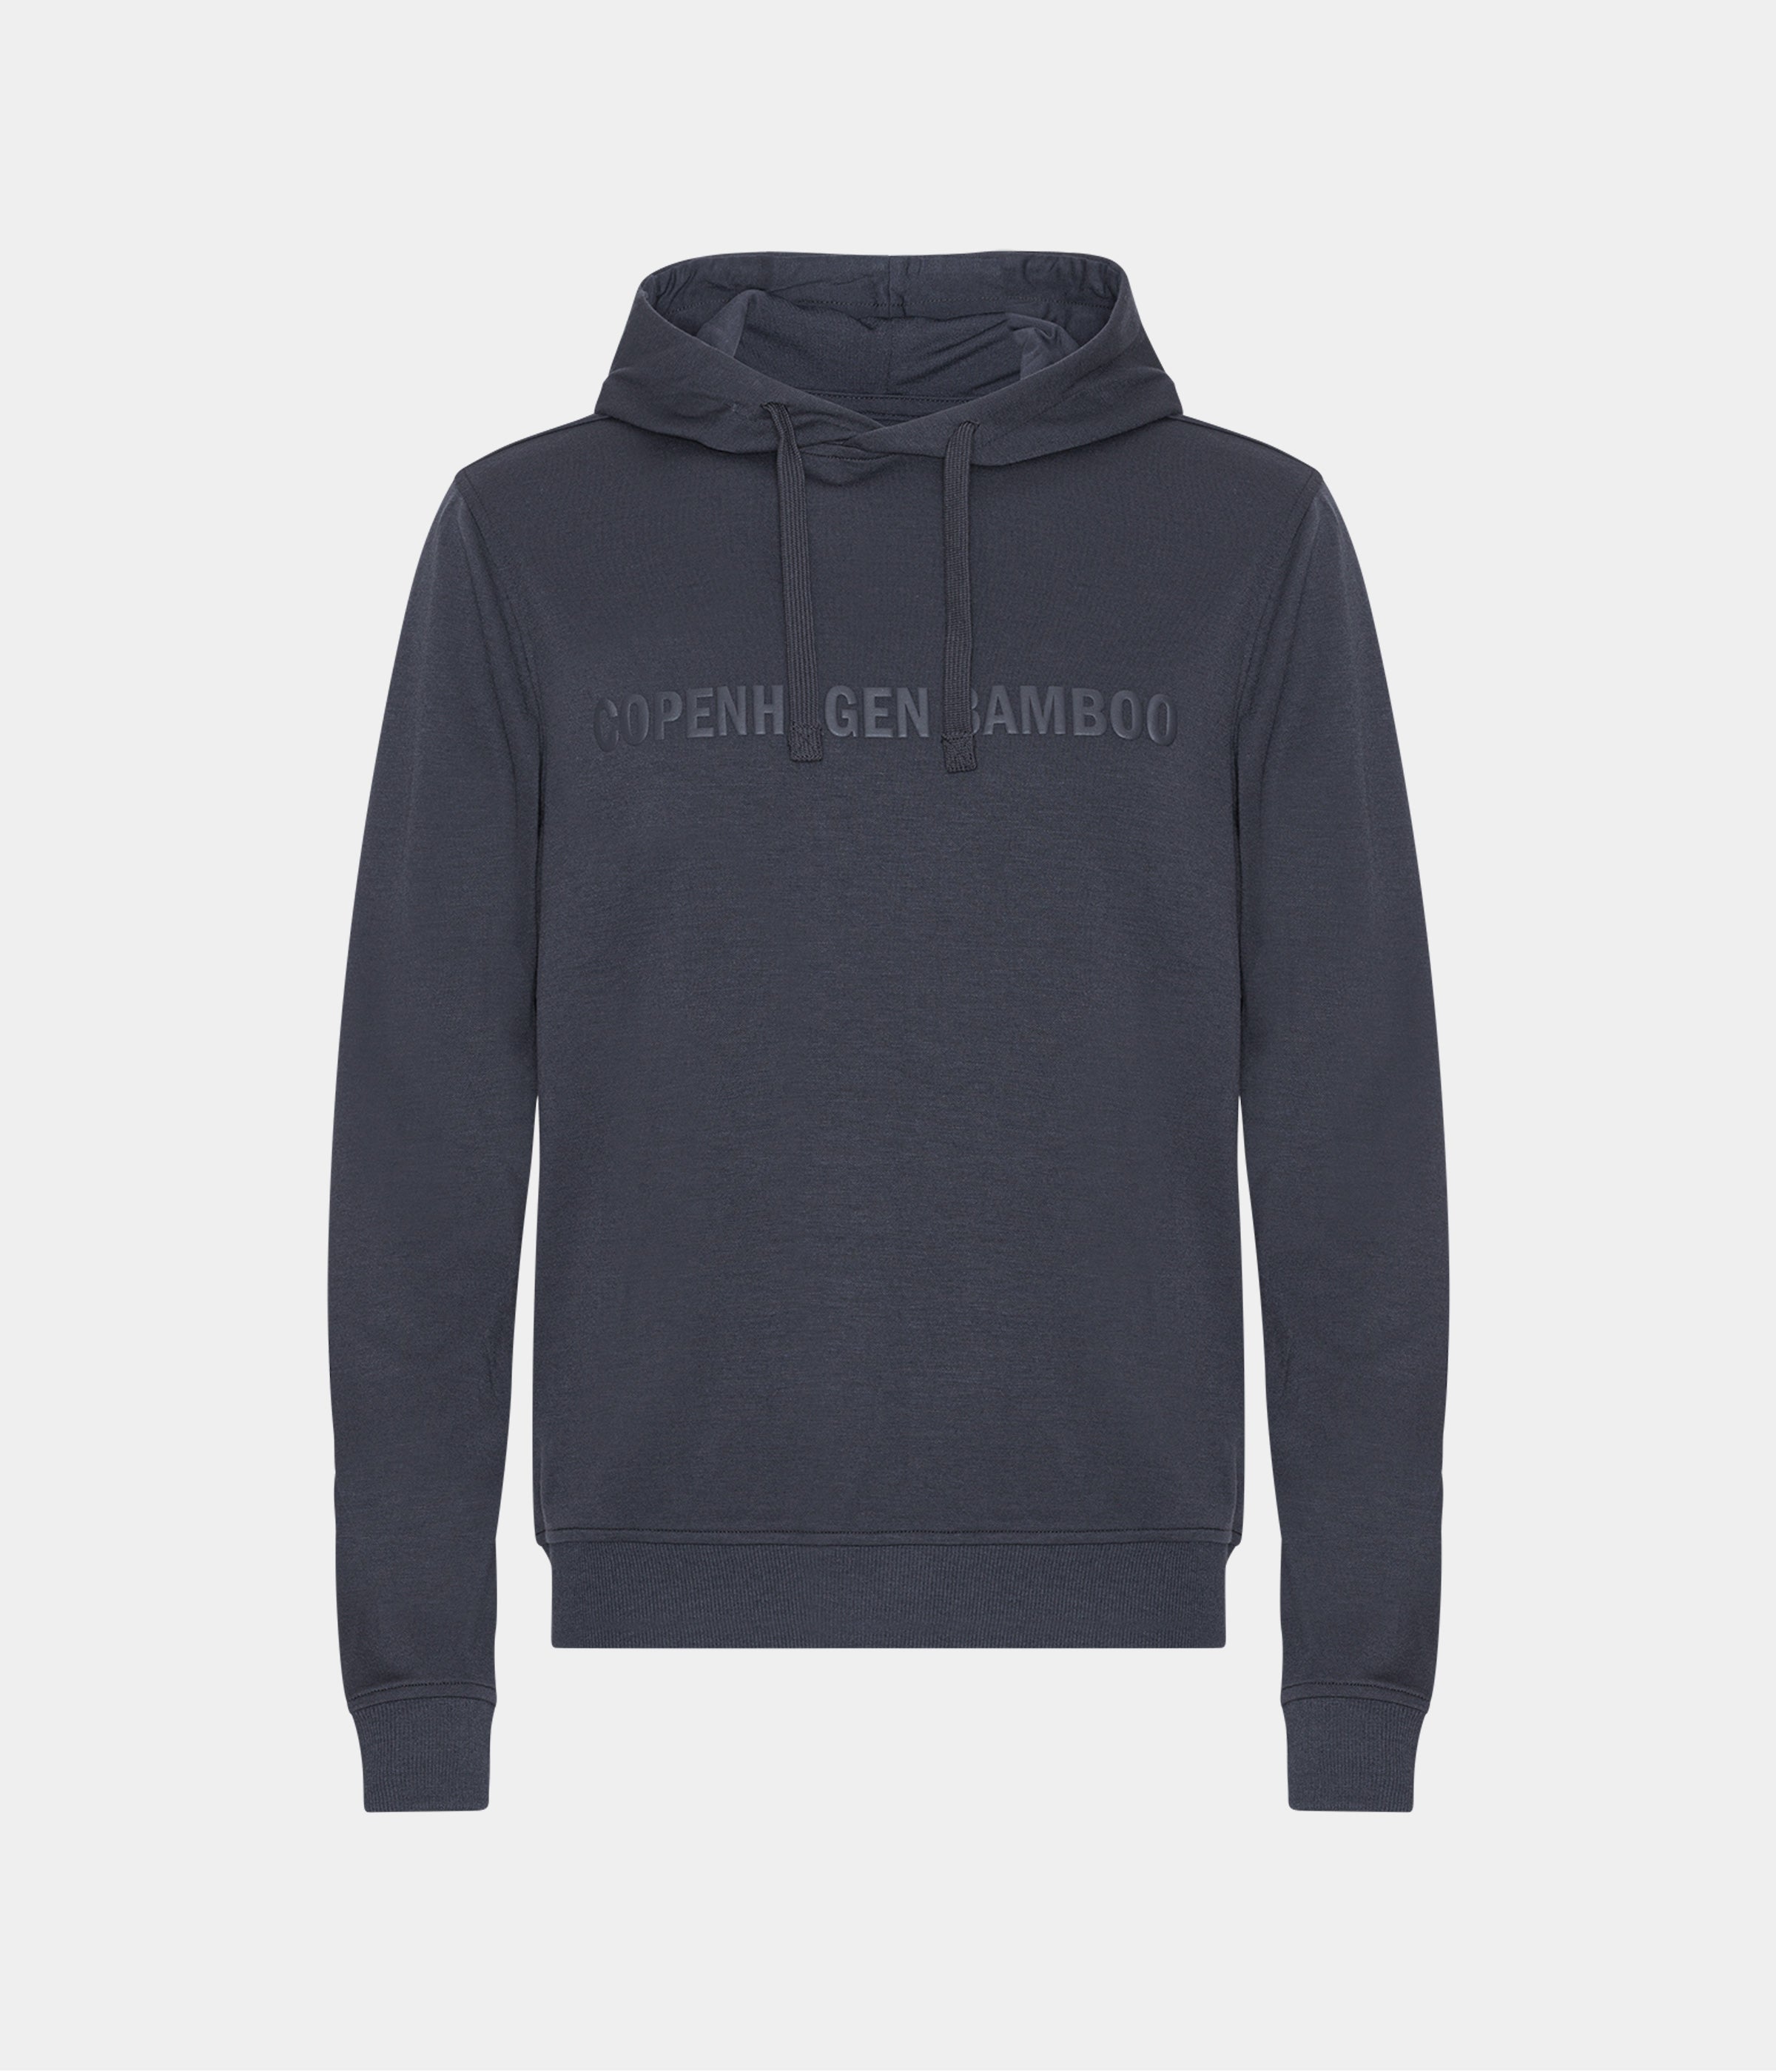 Billede af Mørkegrå bambus hoodie til mænd med logo fra Copenhagen Bamboo, XS